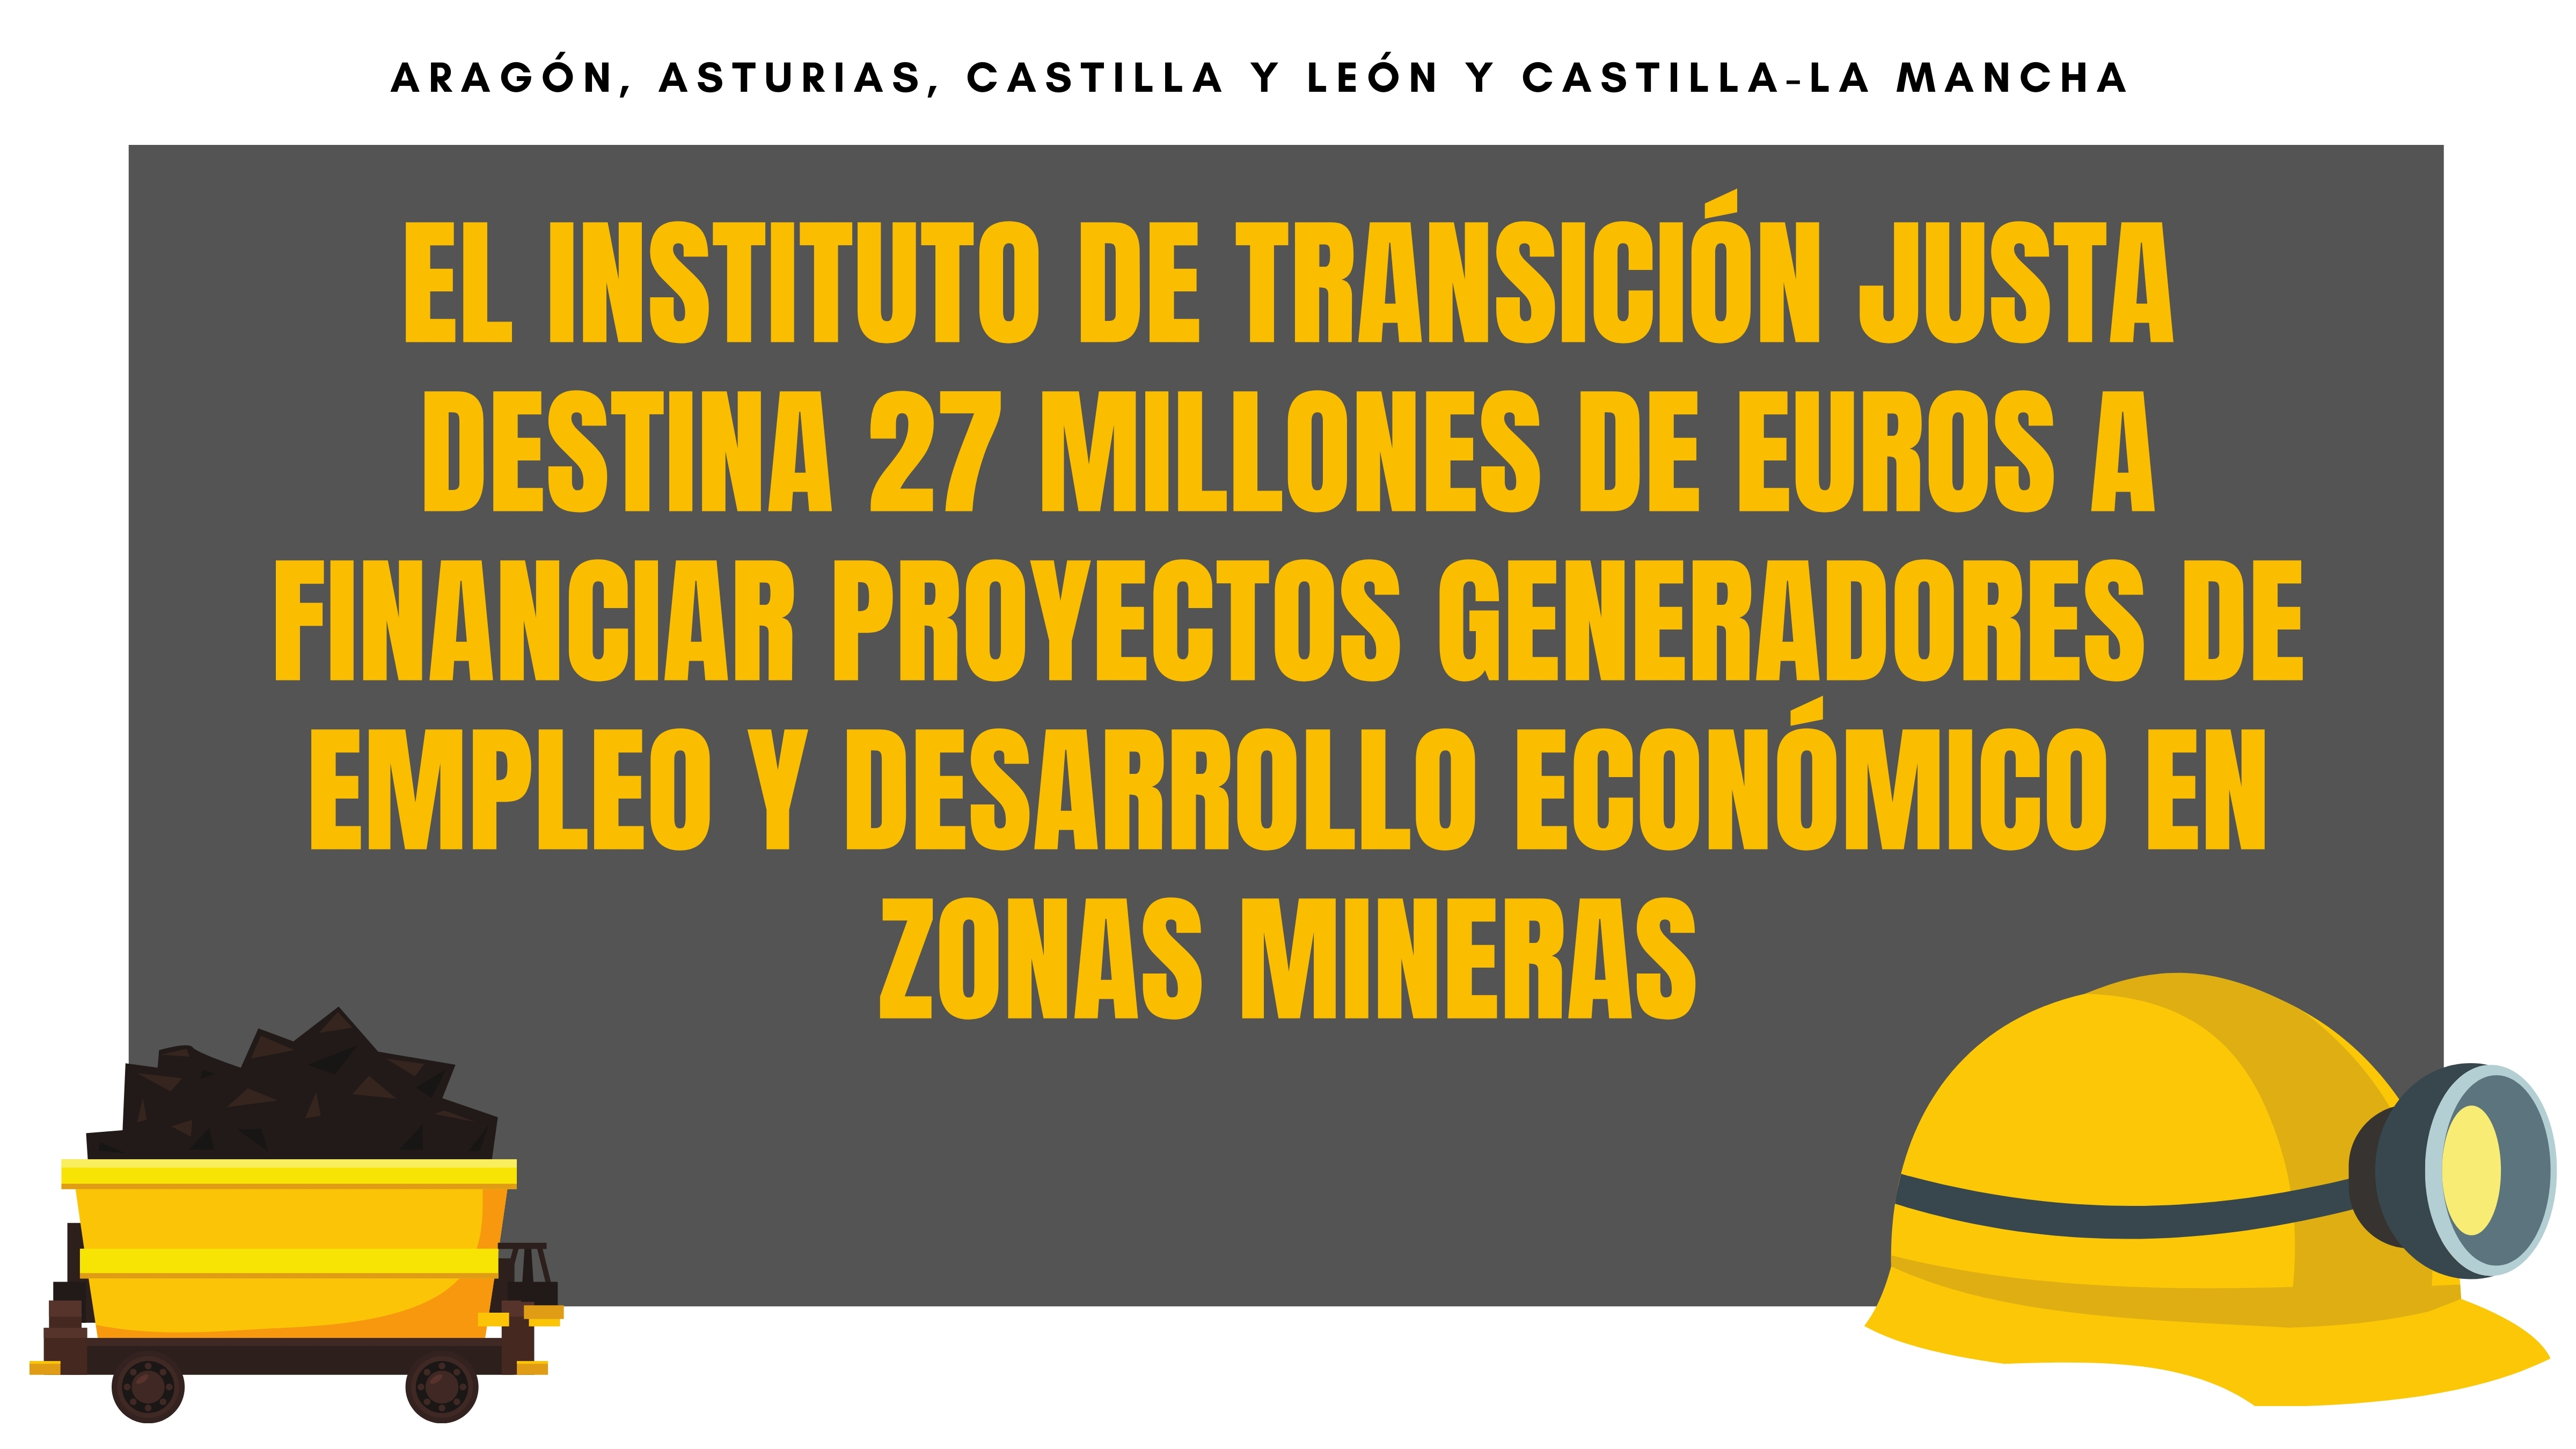 Ayudas a empresas.El Instituto de Transición Justa destina 27 millones de euros a financiar proyectos generadores de empleo y desarrollo económico en zonas mineras